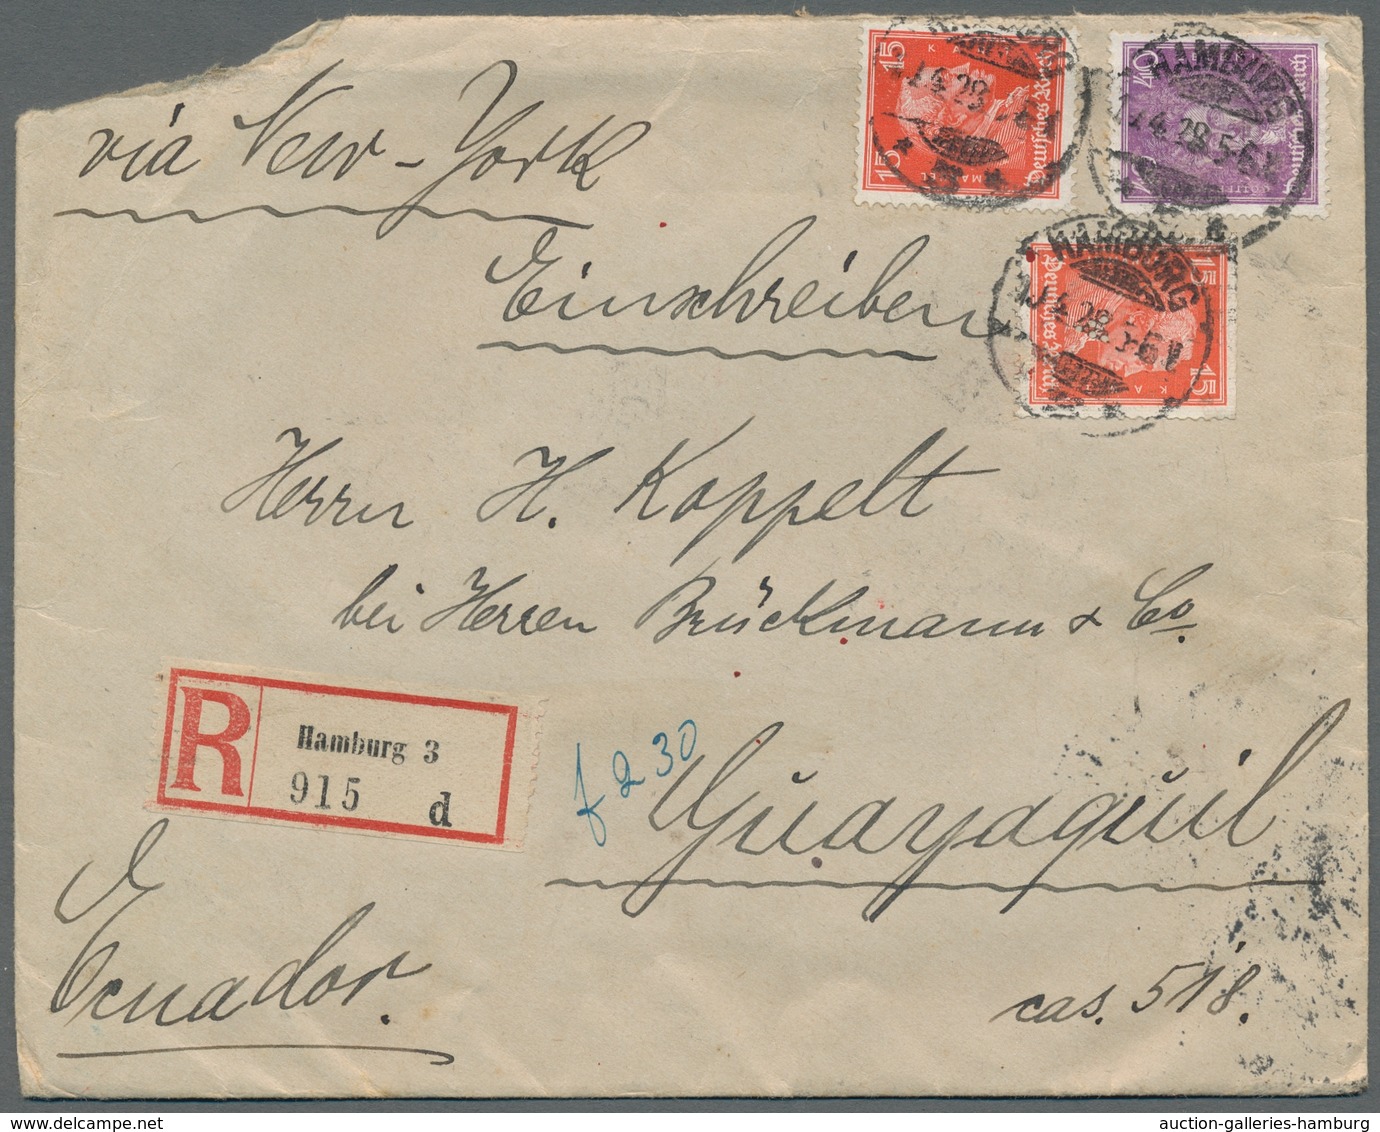 Deutsches Reich: 1928-1939, Bestand von 8 Luftpostbriefen welche alle nach Südamerika gelaufen sind,